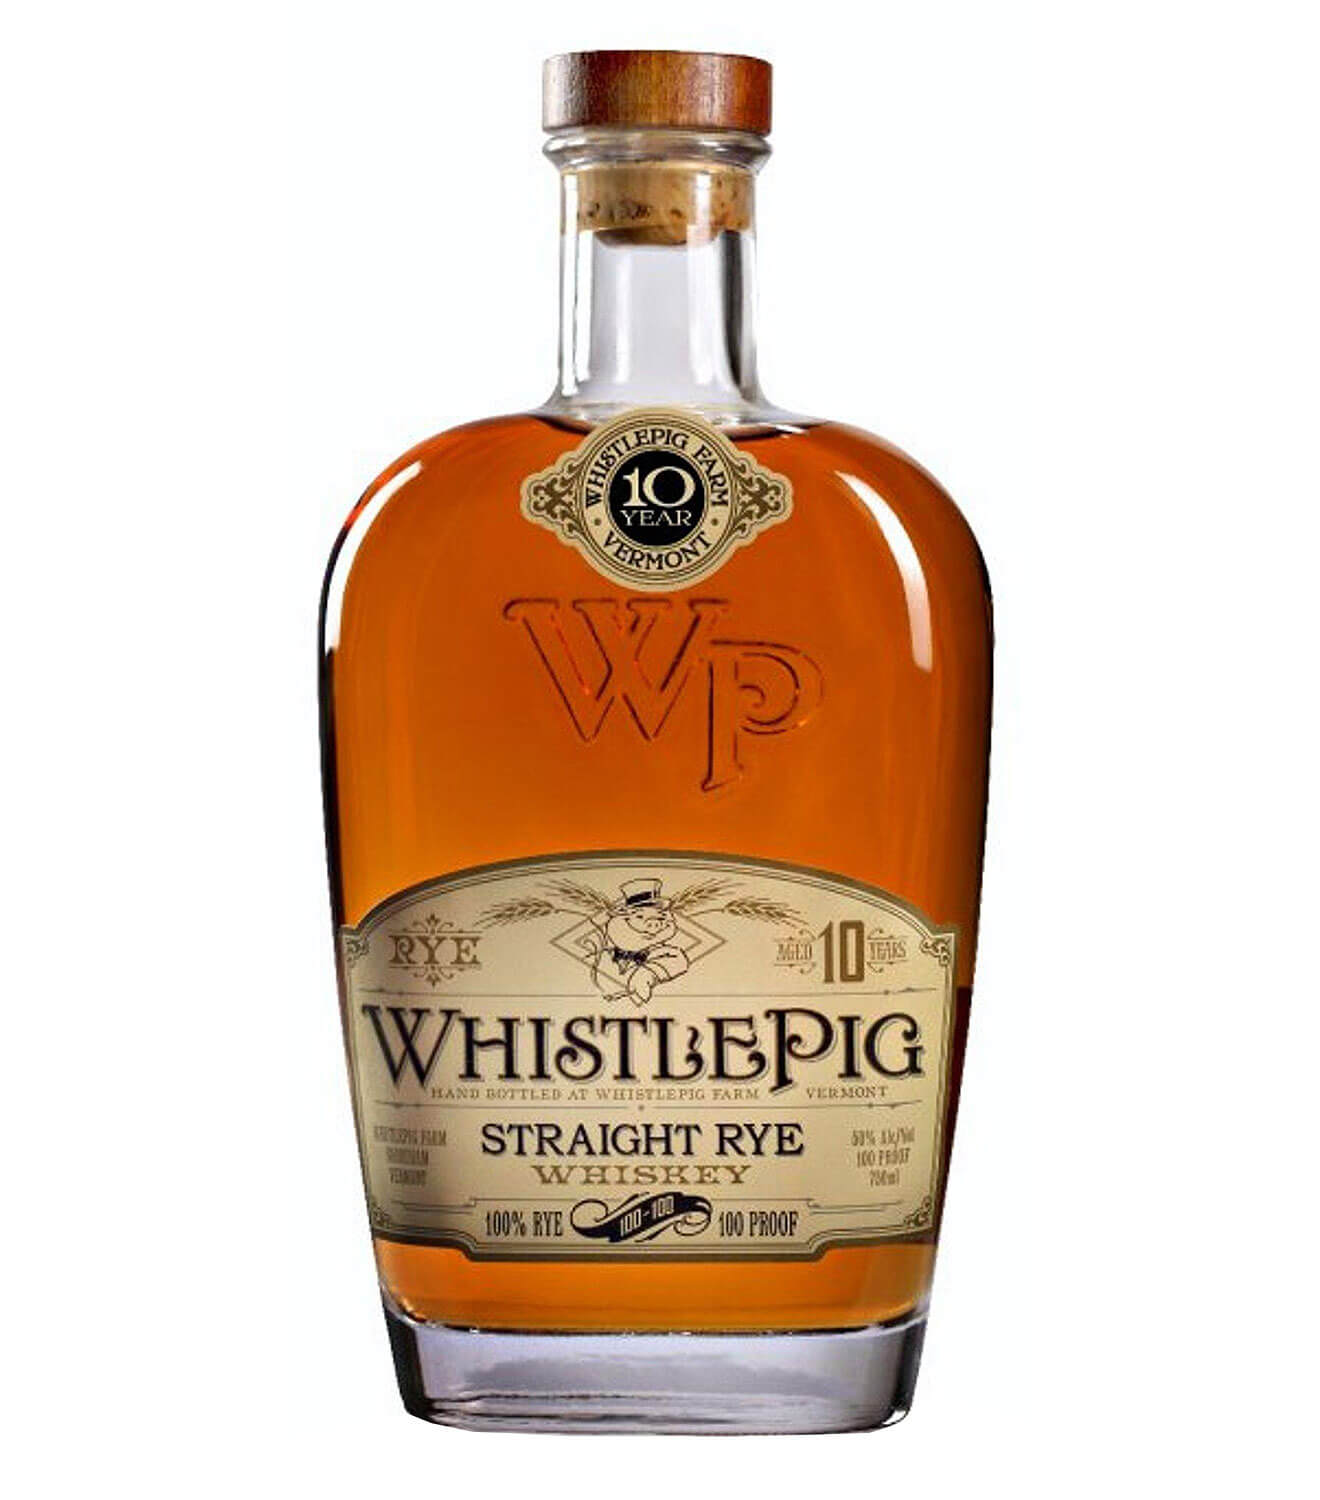 WhistlePig Straight Rye, bottle on white